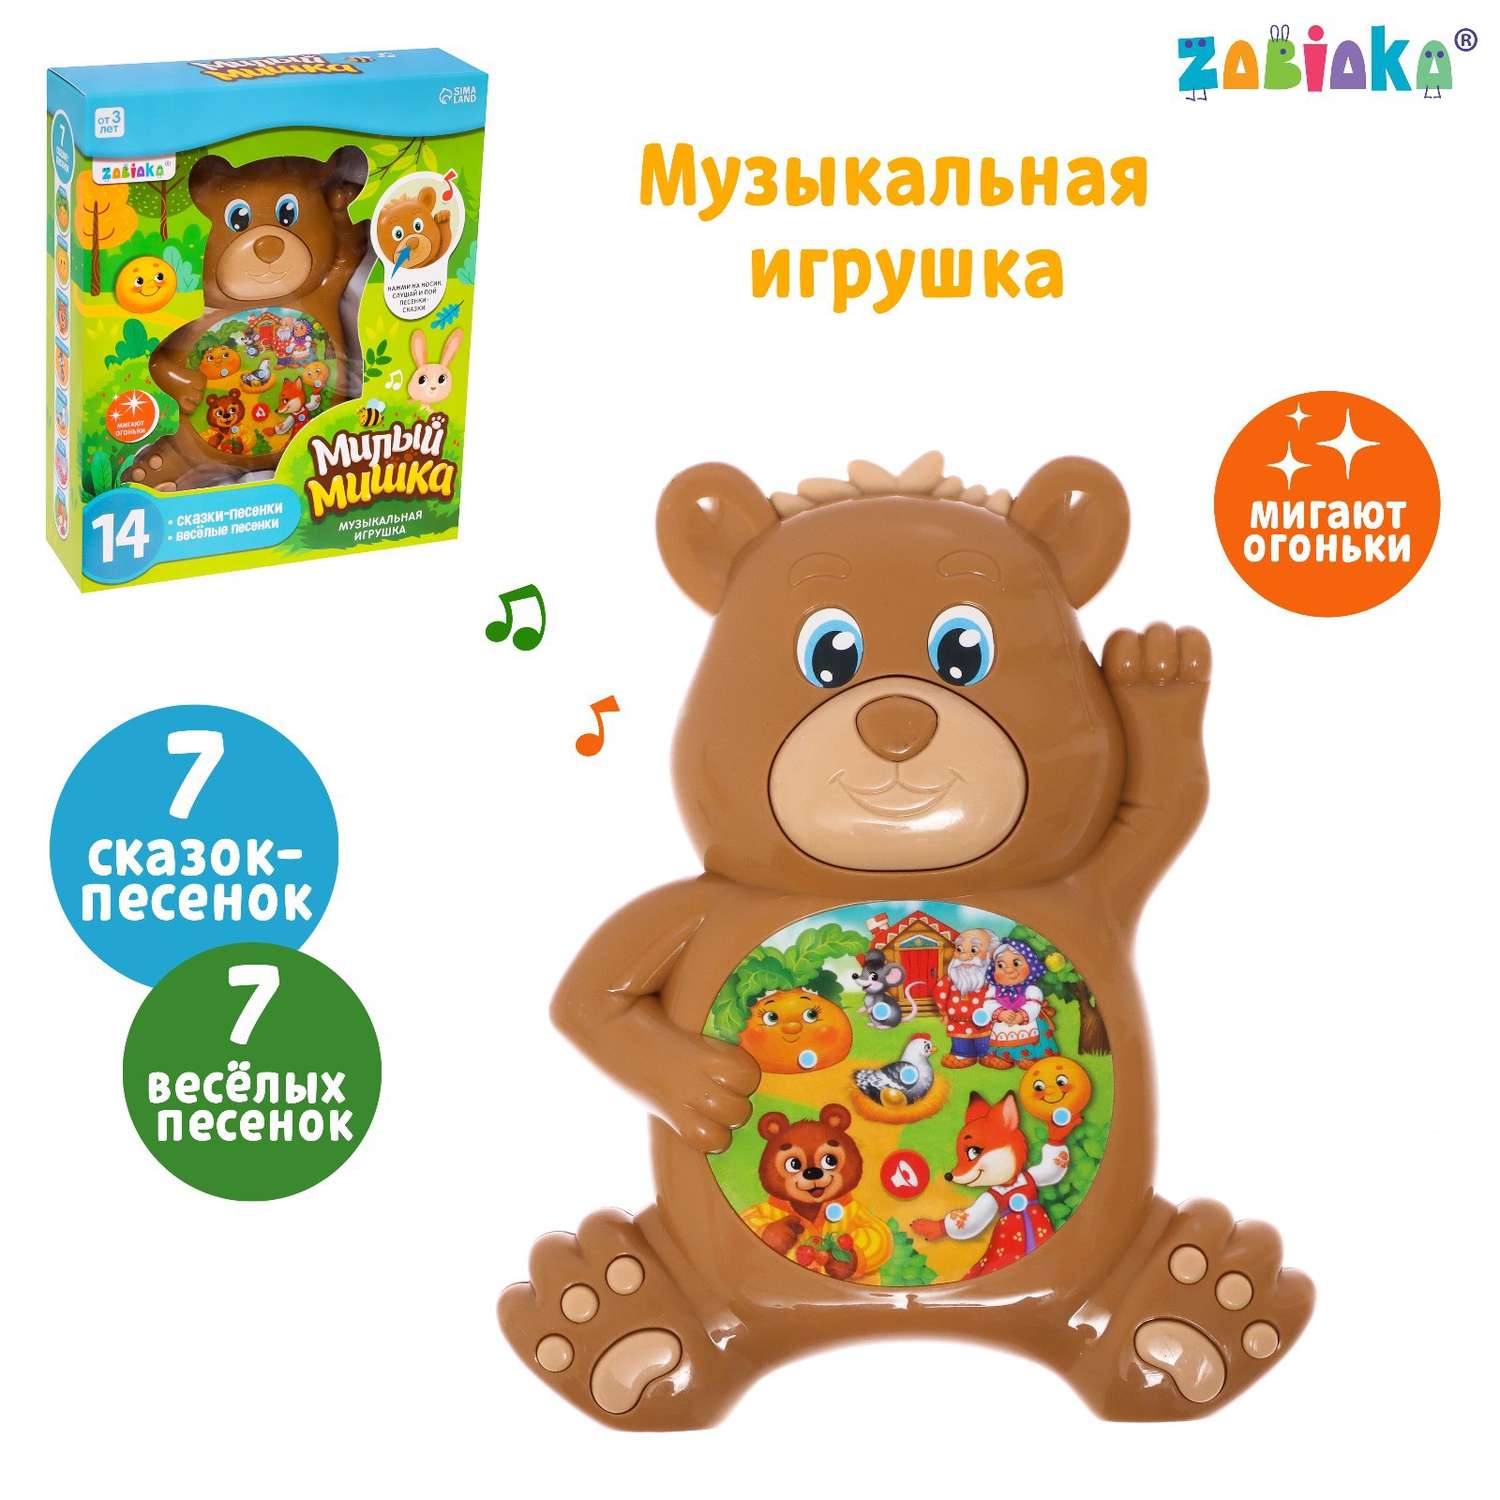 Музыкальная игрушка Zabiaka «Милый мишка» - фото 2